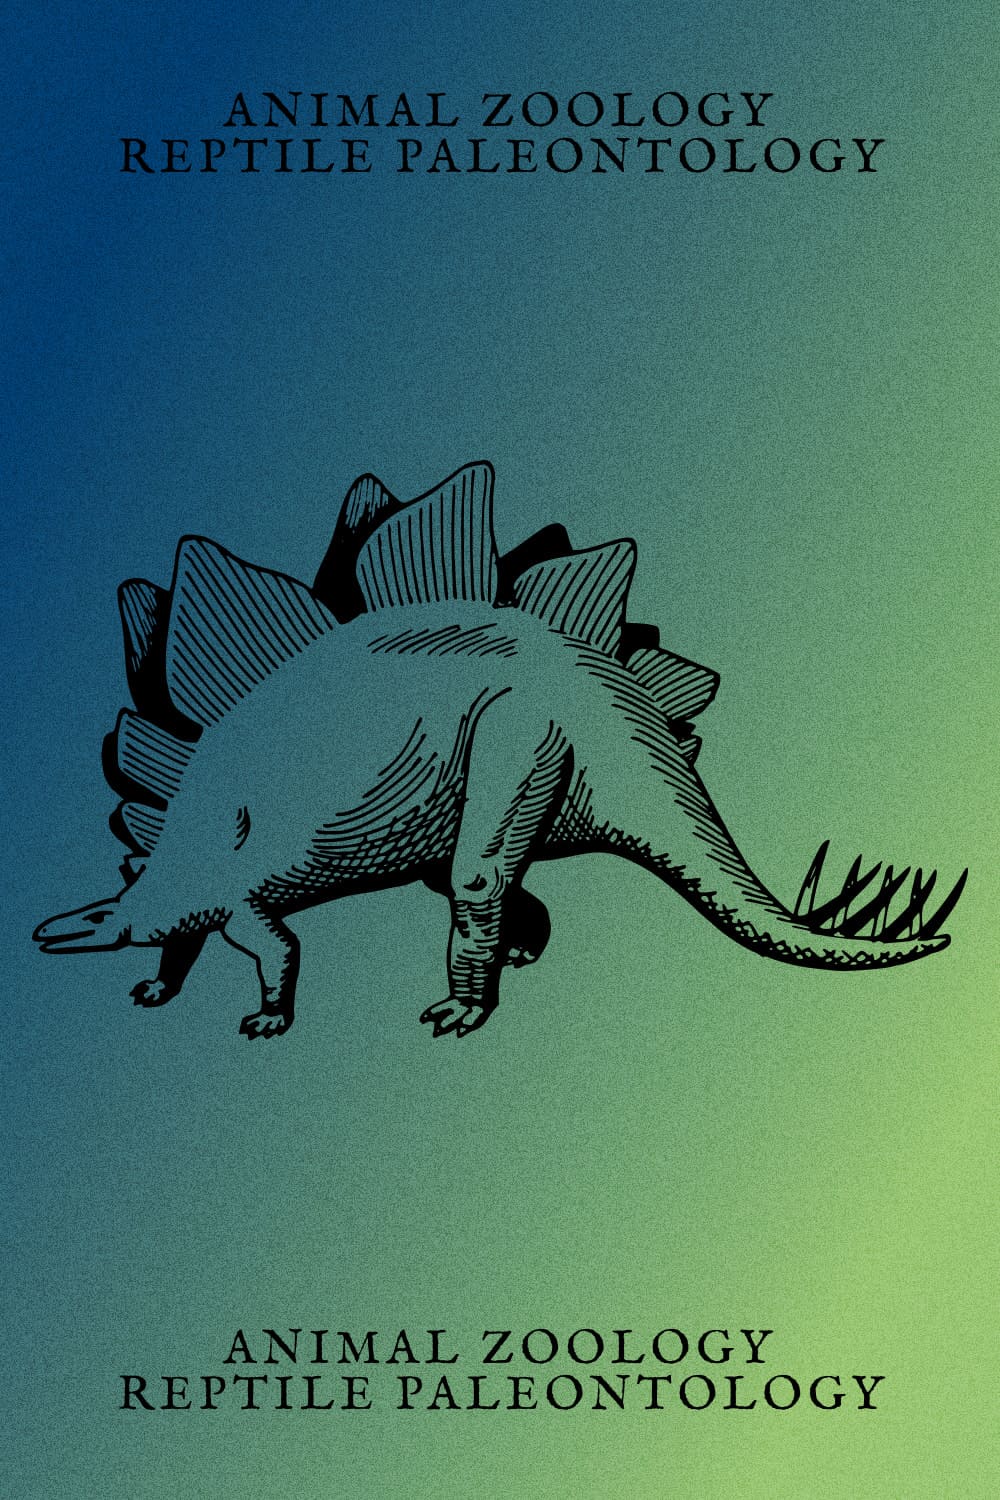 Animal Zoology Reptile Paleontology - Pinterest Image.